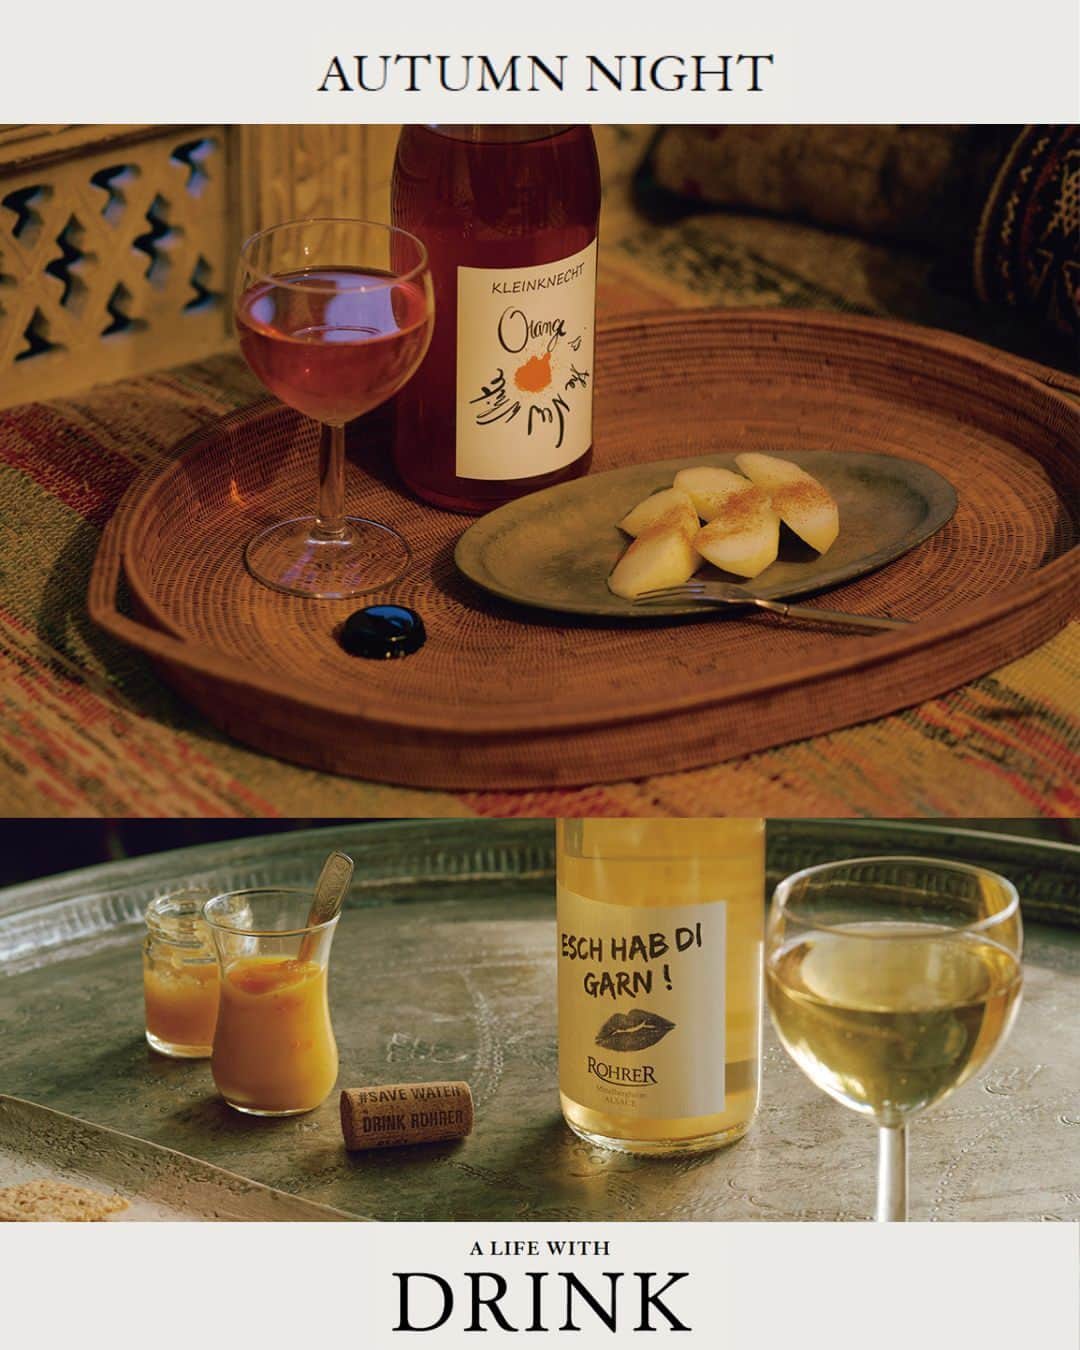 Hanako公式さんのインスタグラム写真 - (Hanako公式Instagram)「【AUTUMN NIGHT】秋の夜長のお供になるドリンク、フード、スイーツ、テーブルウェアをご紹介🍂  🍾DRINK 「じんわりと滋味を感じる、アルザスの醸しワイン」 白ぶどうの種子や果皮を果汁に漬け込んで発酵させるため、オレンジがかった色になることからオレンジワインとも称される、醸した白ワイン。種子や果皮がもたらす渋味や奥行きのある果実味が特徴。この二本は共にフランス・アルザスの造り手によるもの。淡い色のワインから飲み始めて、夜が更けてきたらよりしっかりしたタイプへ。滋味を感じるワインたちと、長い夜をゆるゆると楽しみたい。  ワイン・上から「エッシャープ・ディ・ガルン 2017-21／アンドレ・ロレール」、「オレンジ・イズ・ザ・ニュー・ホワイト 2021／クラインクネヒト」各3,740円（共にザ・ワインショップトーキョー )  🥩FOOD 「お酒がぐいぐい進む羊肉のジャーキーと生ハム。」 今年で創業95年を迎えた、日本随一の羊肉専門店〈東洋肉店〉。「もっと羊肉を気軽に楽しんでほしい」と三代目が開発したのが、世界的にも珍しい羊肉の加工品。ラムの赤身を自家製ジンギスカンのタレに漬け込んだジャーキー（干し肉）は、ビールと相性抜群。塩漬の赤身を燻製にした生ハムは、しっとり柔らかでクセがなく、ワインにぴったり。秋の夜長を楽しむホームパーティの始まりに出したい二品。  「羊の干し肉」50g980円、「羊の生ハム」約50g880円   🍪SWEETS 「まるで宝箱。酒粕やスパイスを使った個性豊かなクッキー缶 」 “アートを感じるギルトフリーなお菓子”をテーマに、見た目、香り、味にこだわった高揚感のある焼菓子を展開する〈アベイク〉。安心・安全な食材を厳選し、小麦粉、卵、乳製品、白砂糖、添加物不使用でヴィーガン対応。定番人気のクッキー缶には、酒粕やスパイスを使ったものなど個性豊かな15種類がぎっしり。真夜中のおやつやワインのお供など、さまざまな気分に寄り添う“おいしい”宝石箱だ。  クッキー缶「Boîte à bijoux chat “ねこの宝石箱”」15種類入り4,990円   ☕️TABLEWARE 「心に温かな光を灯す、南米の大地がくれた色。」 茨城・笠間で作陶するKeicondoさんの代表作は、表情豊かな黄金色の器たち。かつて暮らしたボリビアの大地に着想を得てうまれた色だ。自らの作風を「食材一体」と語るだけあり、食べものや飲みものとの相性が抜群。飾るための作品ではなく、日常のなかで使うための器なのだ。入れるものを引き立てつつ、存在感があって温かみのある色。食事の際はもちろん、ほっとひと息つきたい時にも手に取りたくなるはず。  マグ4,950円、プレート・上6,600円、下7,700円（全てKeicondo） ※実店舗やECはなく、展示会やイベントを中心に販売。展示会の情報はInstagram @keicondo で告知。   【Hanako1225号_「美味しいパンには、理由がある 」】 #Hanako#Hanakomagazine #hanako_instamag #秋の夜長に #秋の夜長の過ごし方 #秋の味覚 #手土産にオススメ #おやつの時間 #日曜日の過ごし方」10月8日 16時02分 - hanako_magazine